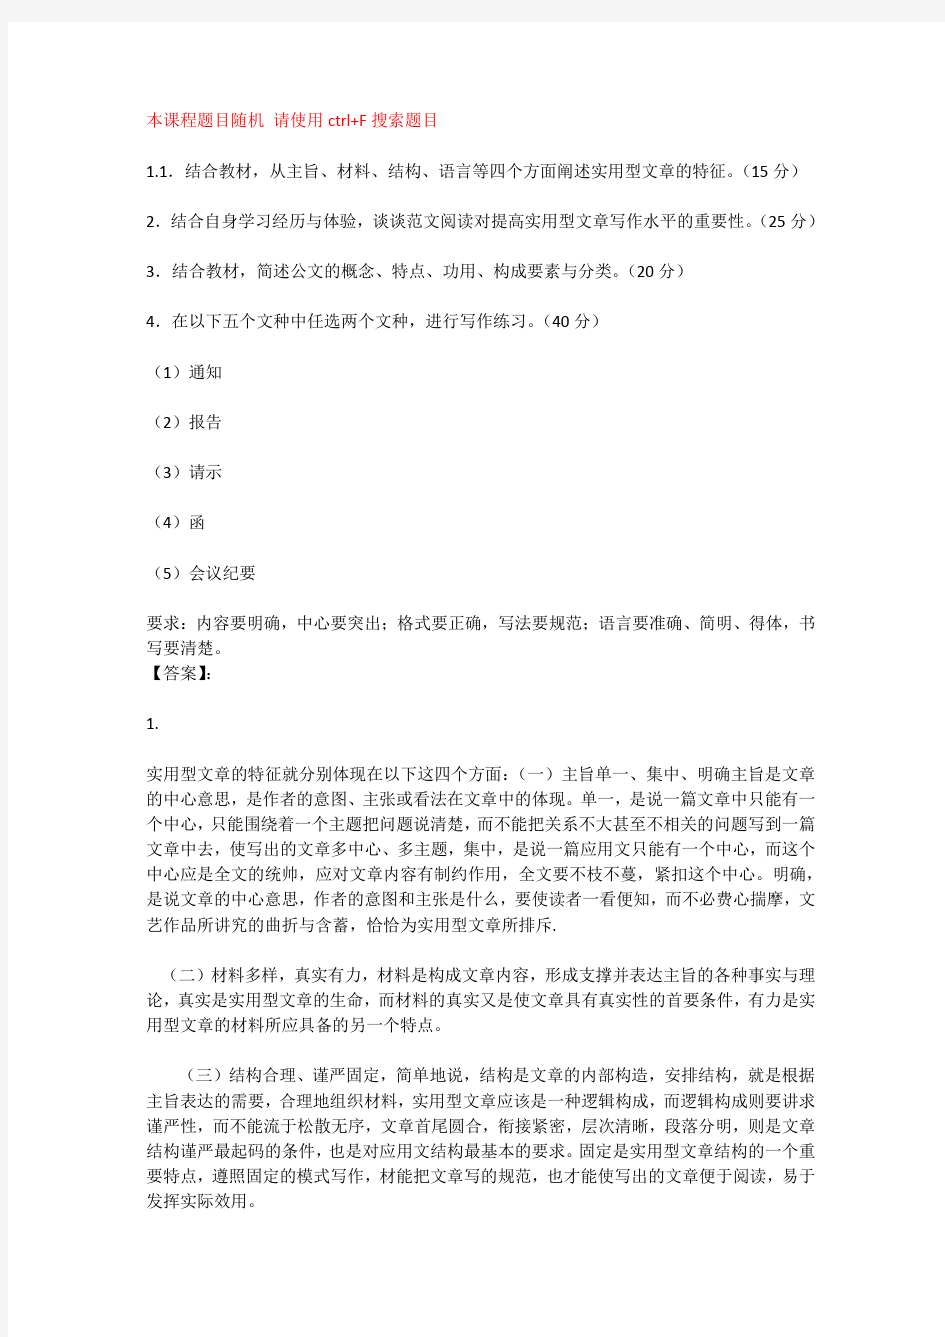 国开电大应用写作(汉语)河北分部形考作业一至二答案